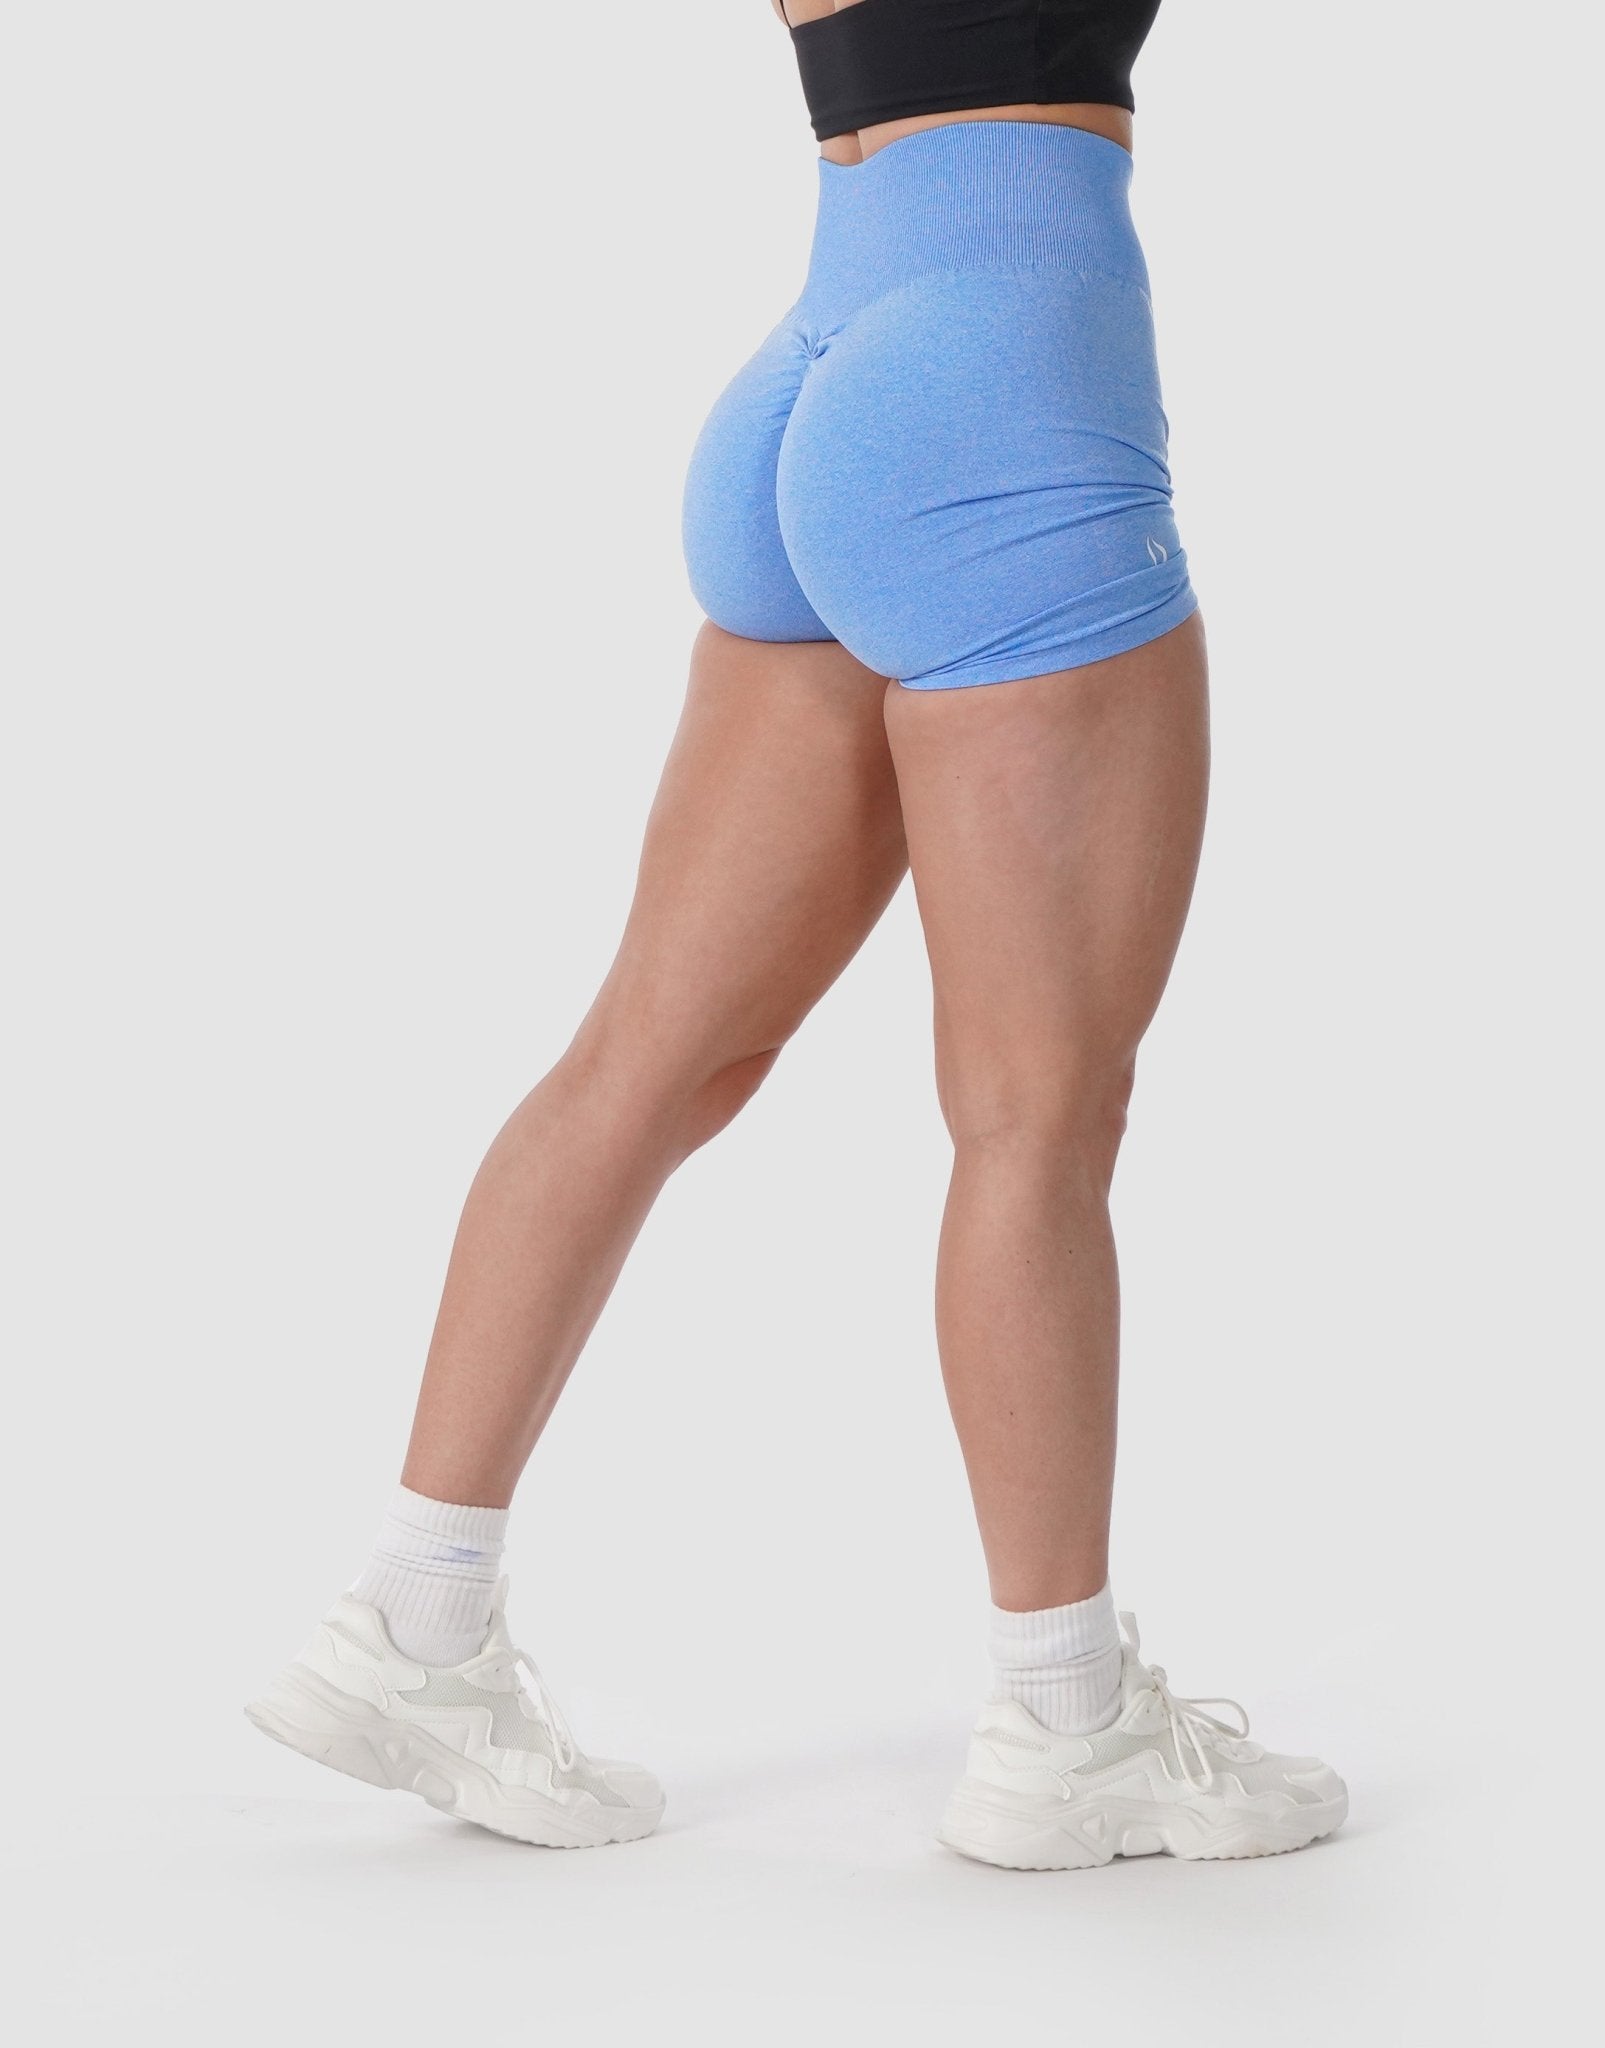 Scrunch Butt Sports Shorts Honeycomb Textured Wide Waistband Biker Shorts  Anti Cellulite Plain Short Leggings Running Tights